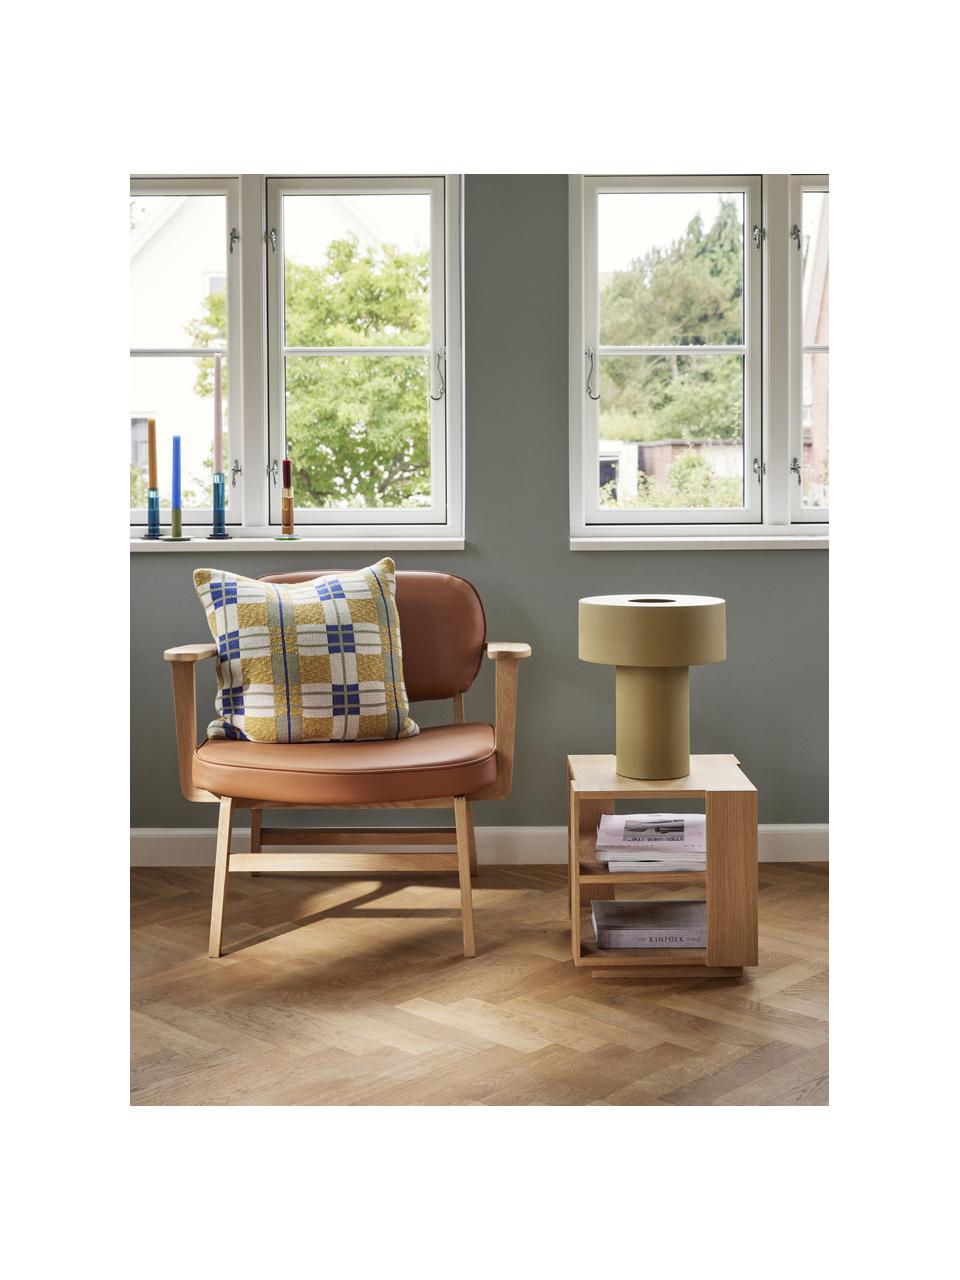 Dřevěný odkládací stolek Merge, Dubová dýha

Tento produkt je vyroben z udržitelných zdrojů dřeva s certifikací FSC®., Dřevo, Š 37 cm, V 38 cm